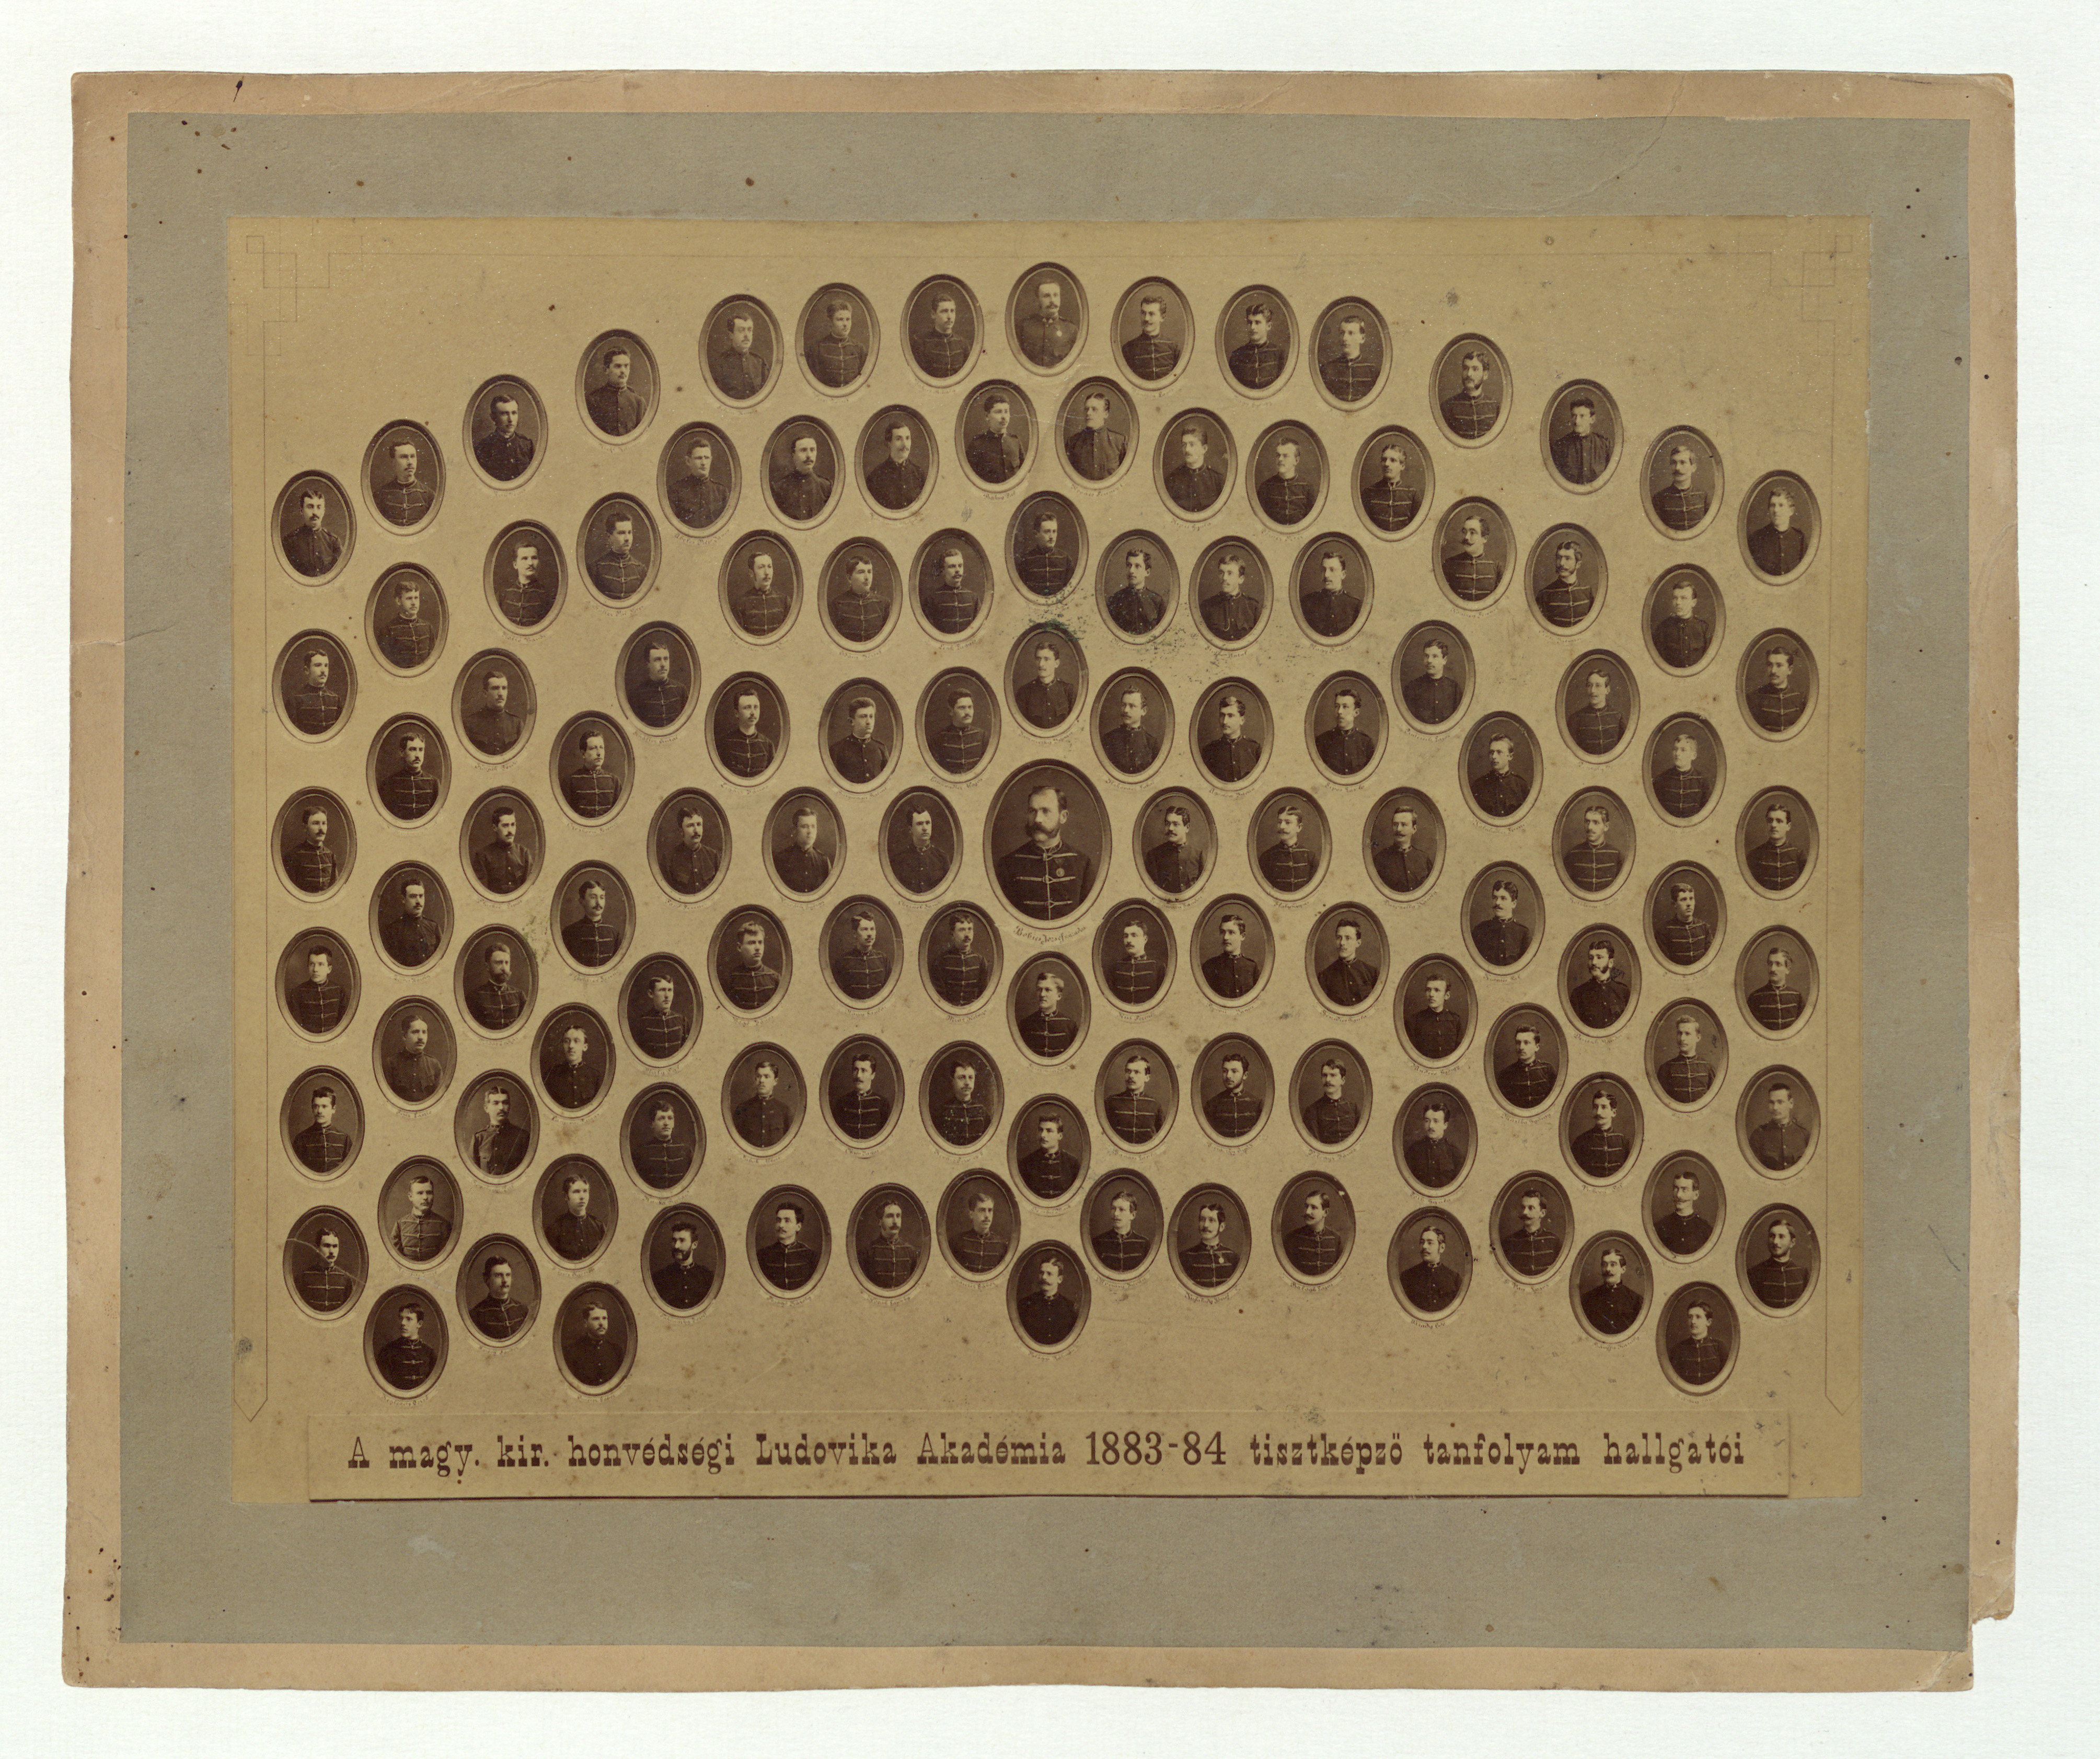 A magy. kir. honvédségi Ludovika Akadémia 1883-84 tisztképző tanfolyam hallgatói